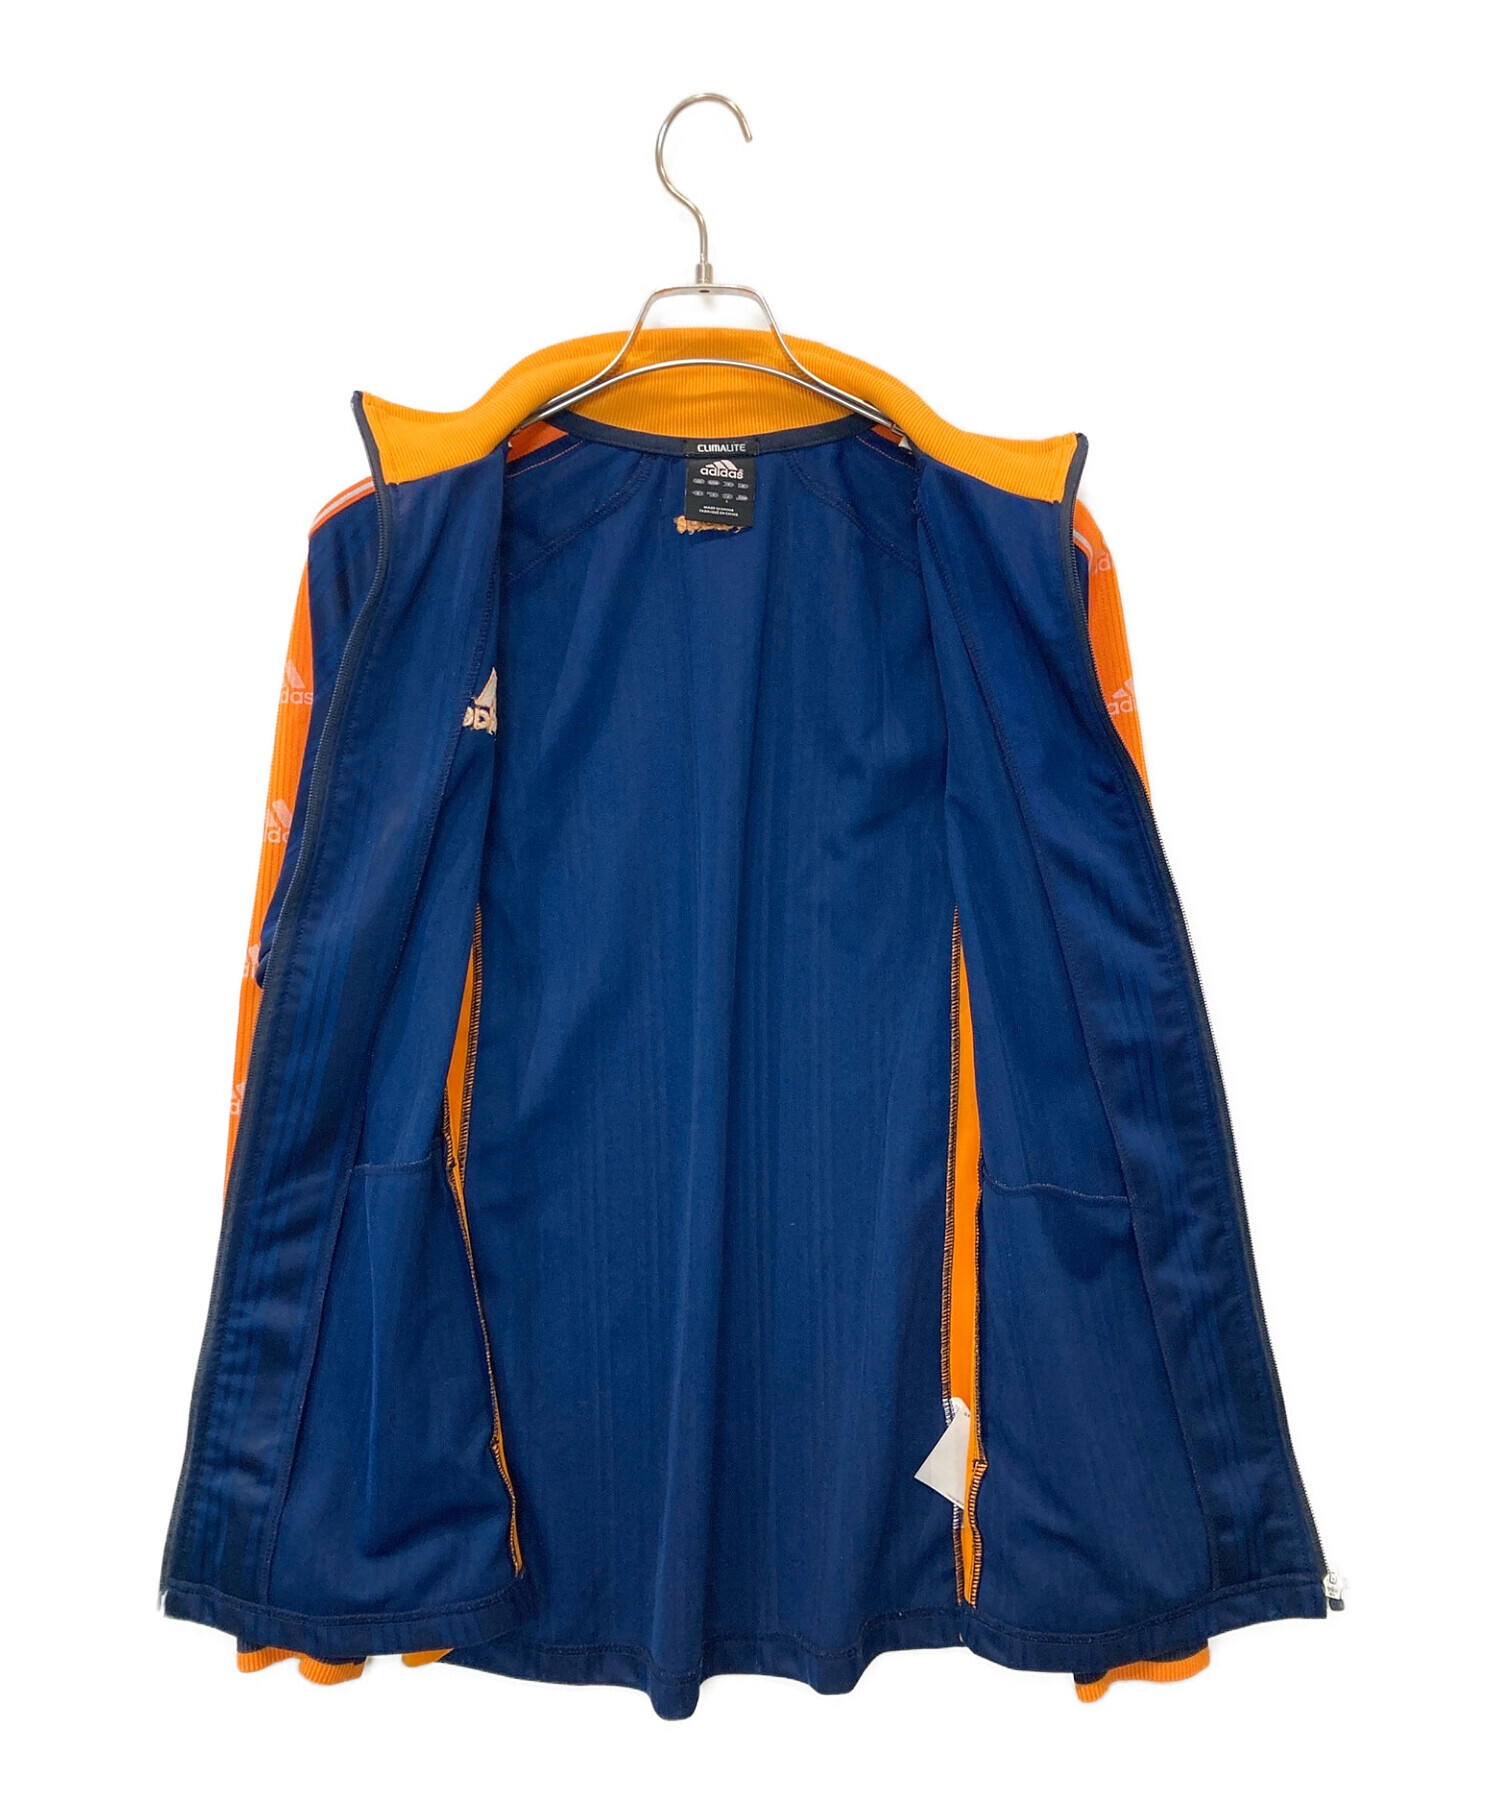 adidas (アディダス) トラックジャケット ネイビー×オレンジ サイズ:L